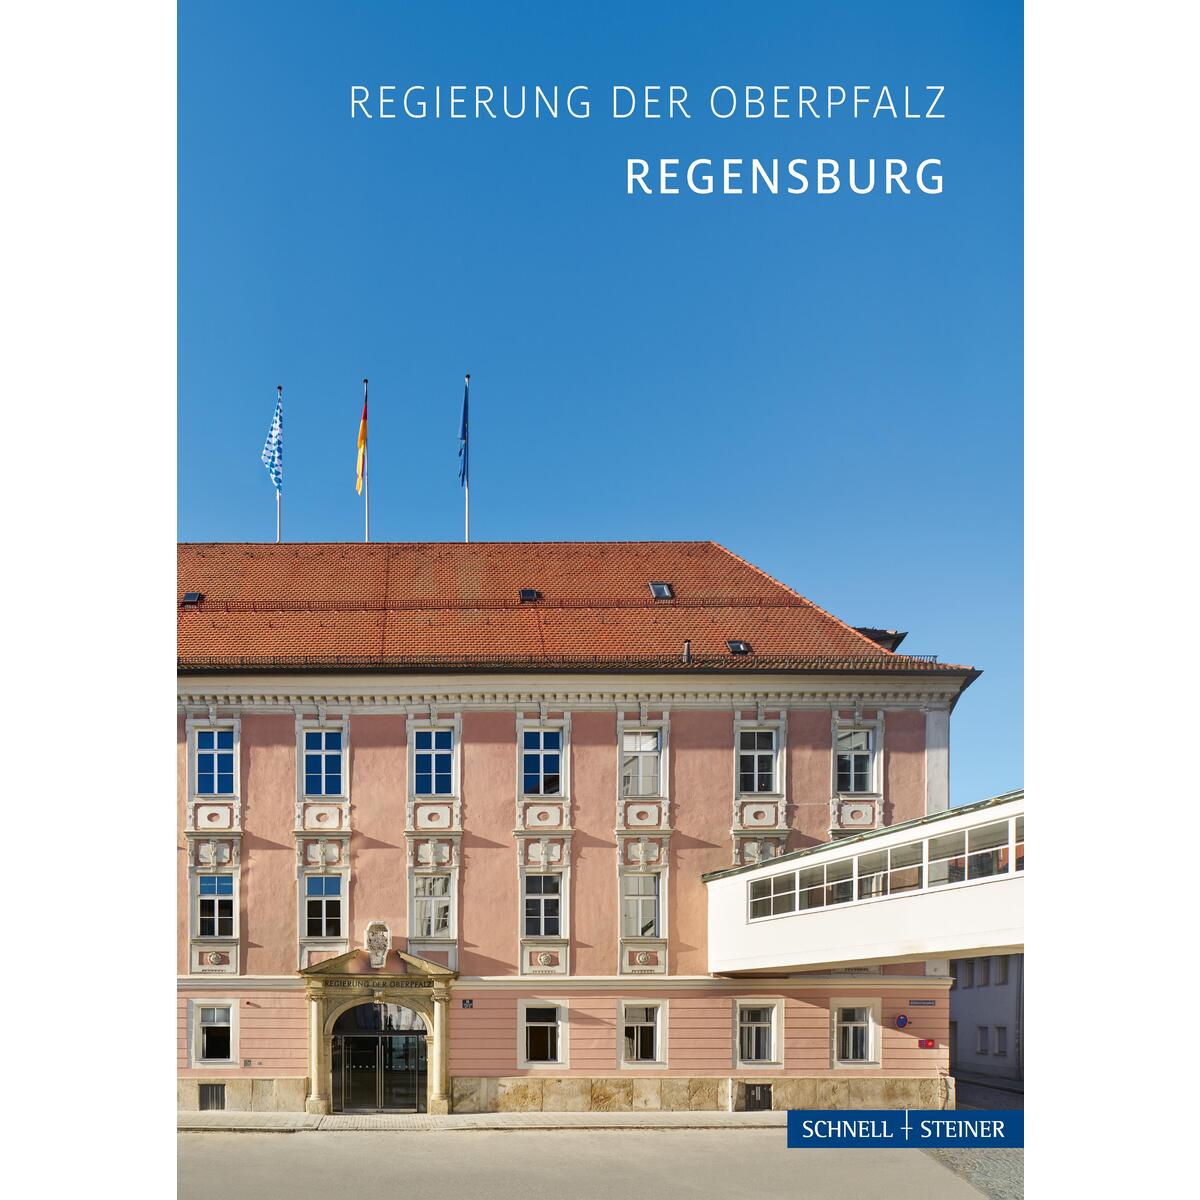 Regierung der Oberpfalz von Schnell & Steiner GmbH